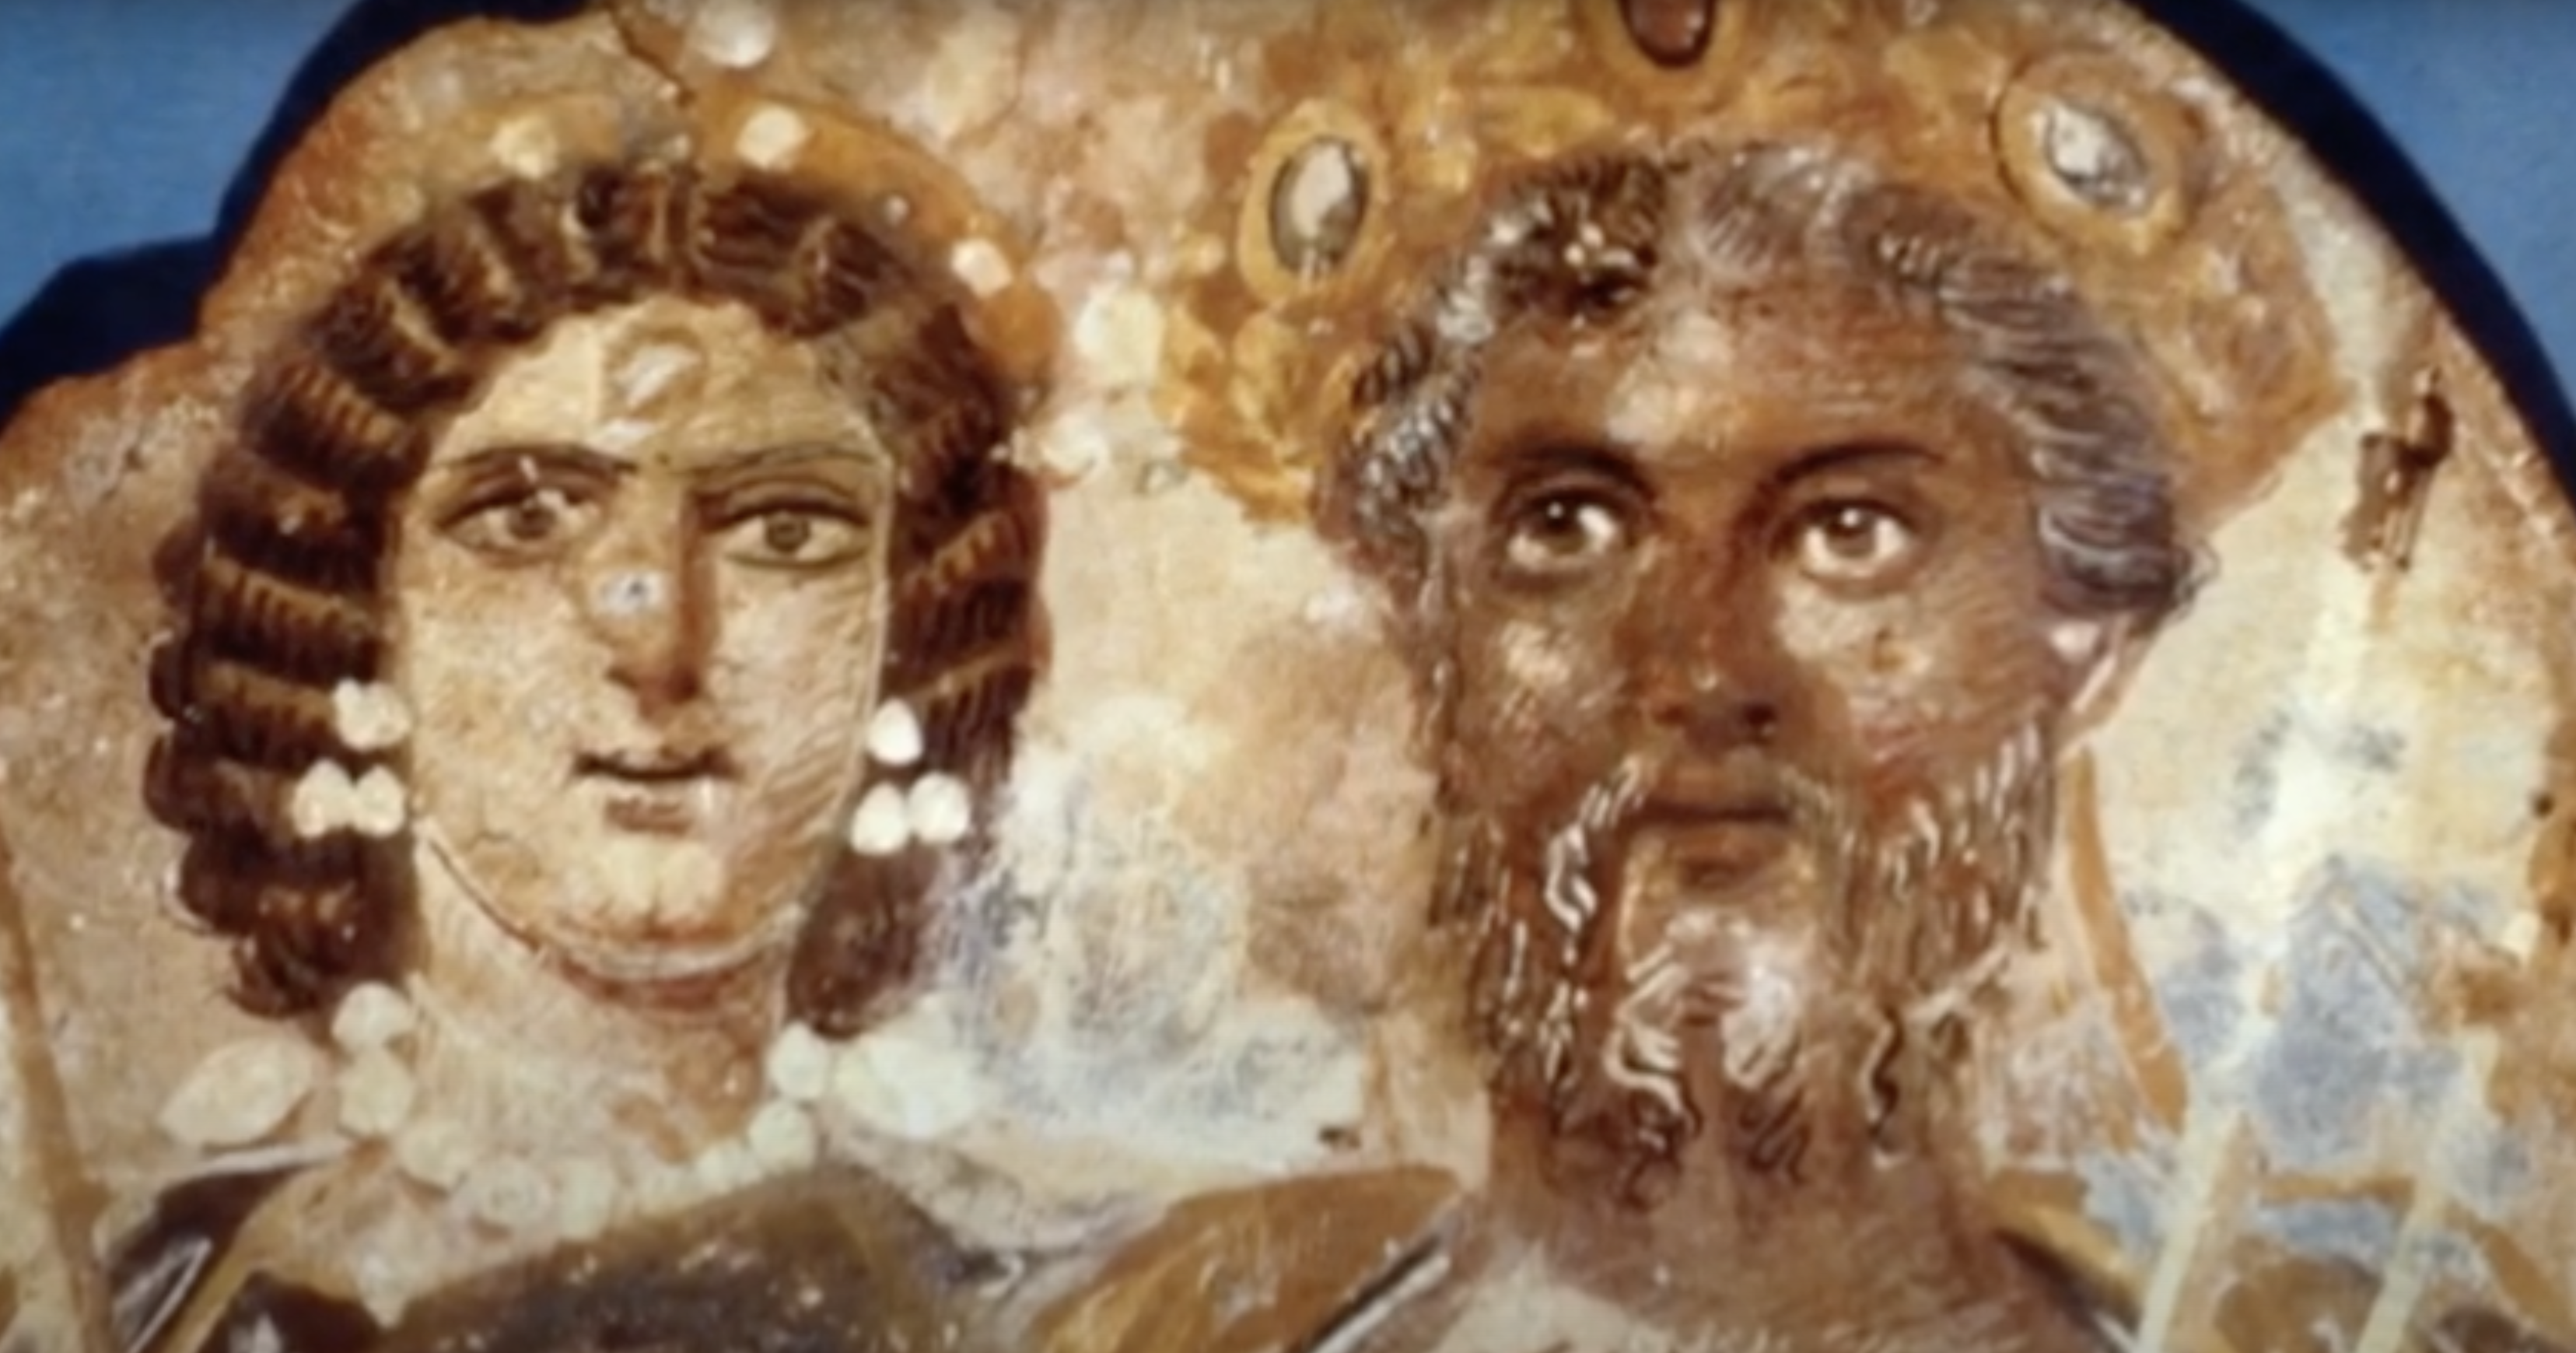 Septimius Severus: The African Roman Emperor that shaped Britain